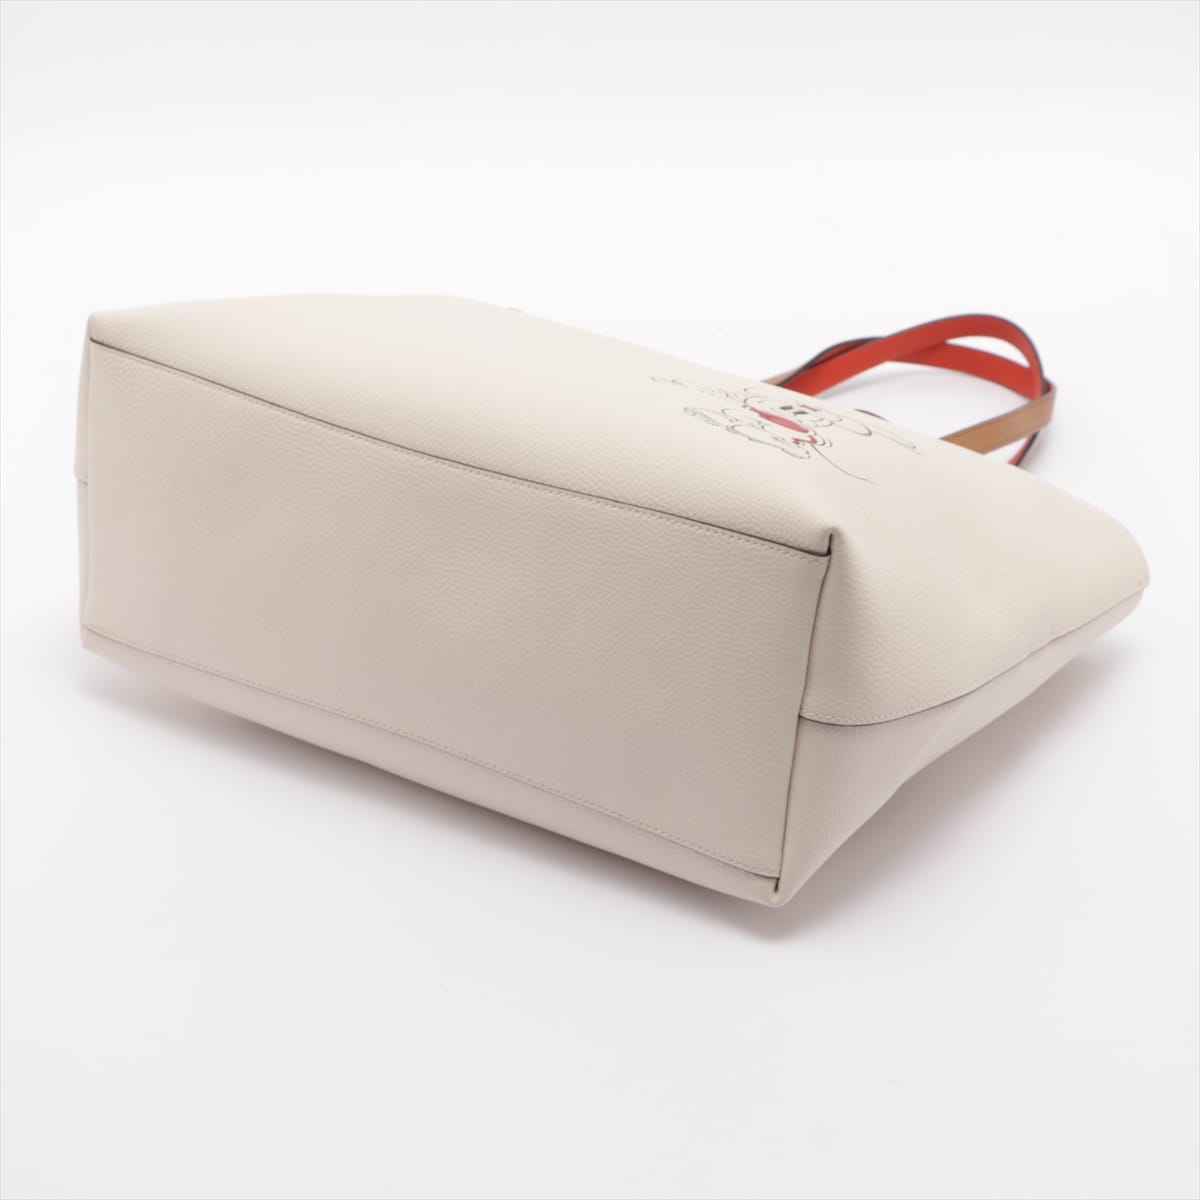 Coach x Disney Leather Tote bag White 3907